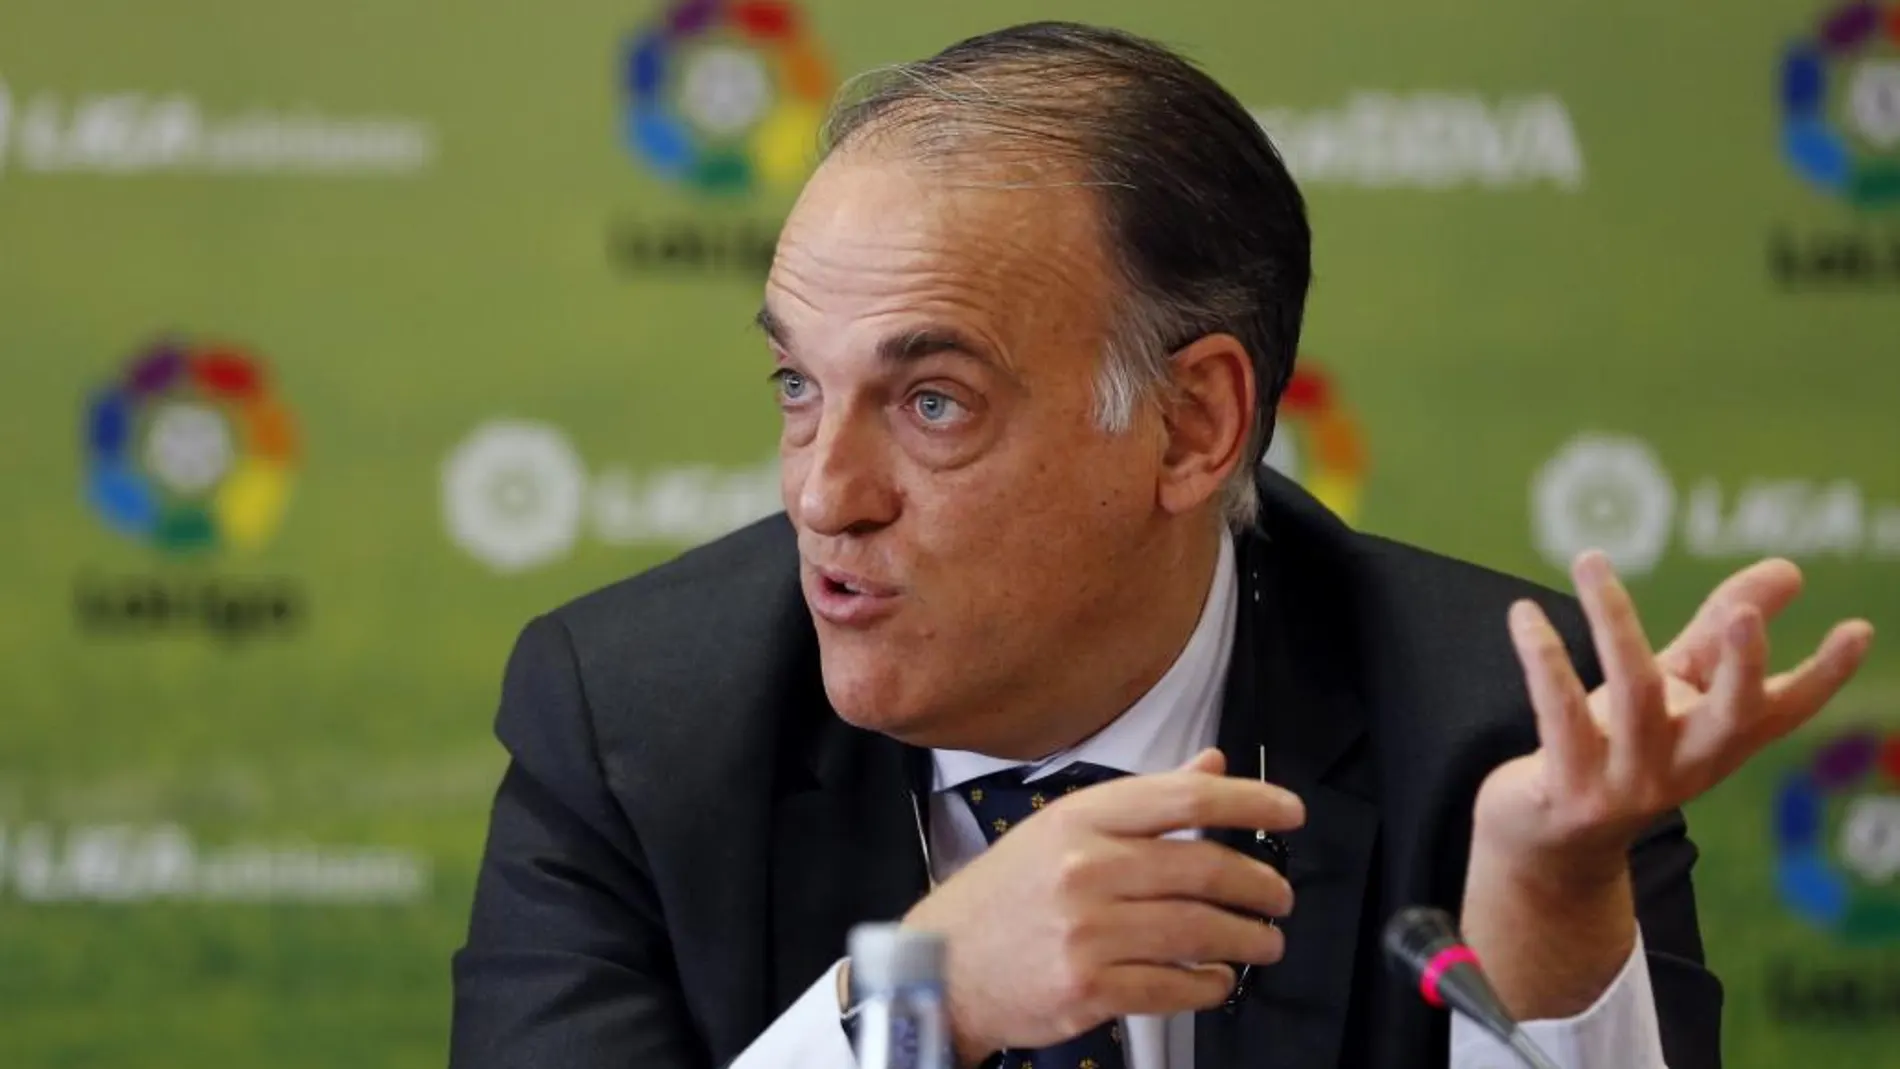 El presidente de la Liga de Fútbol Profesional, Javier Tebas, durante la presentación del informe Soccerex Transfer Review 2016.